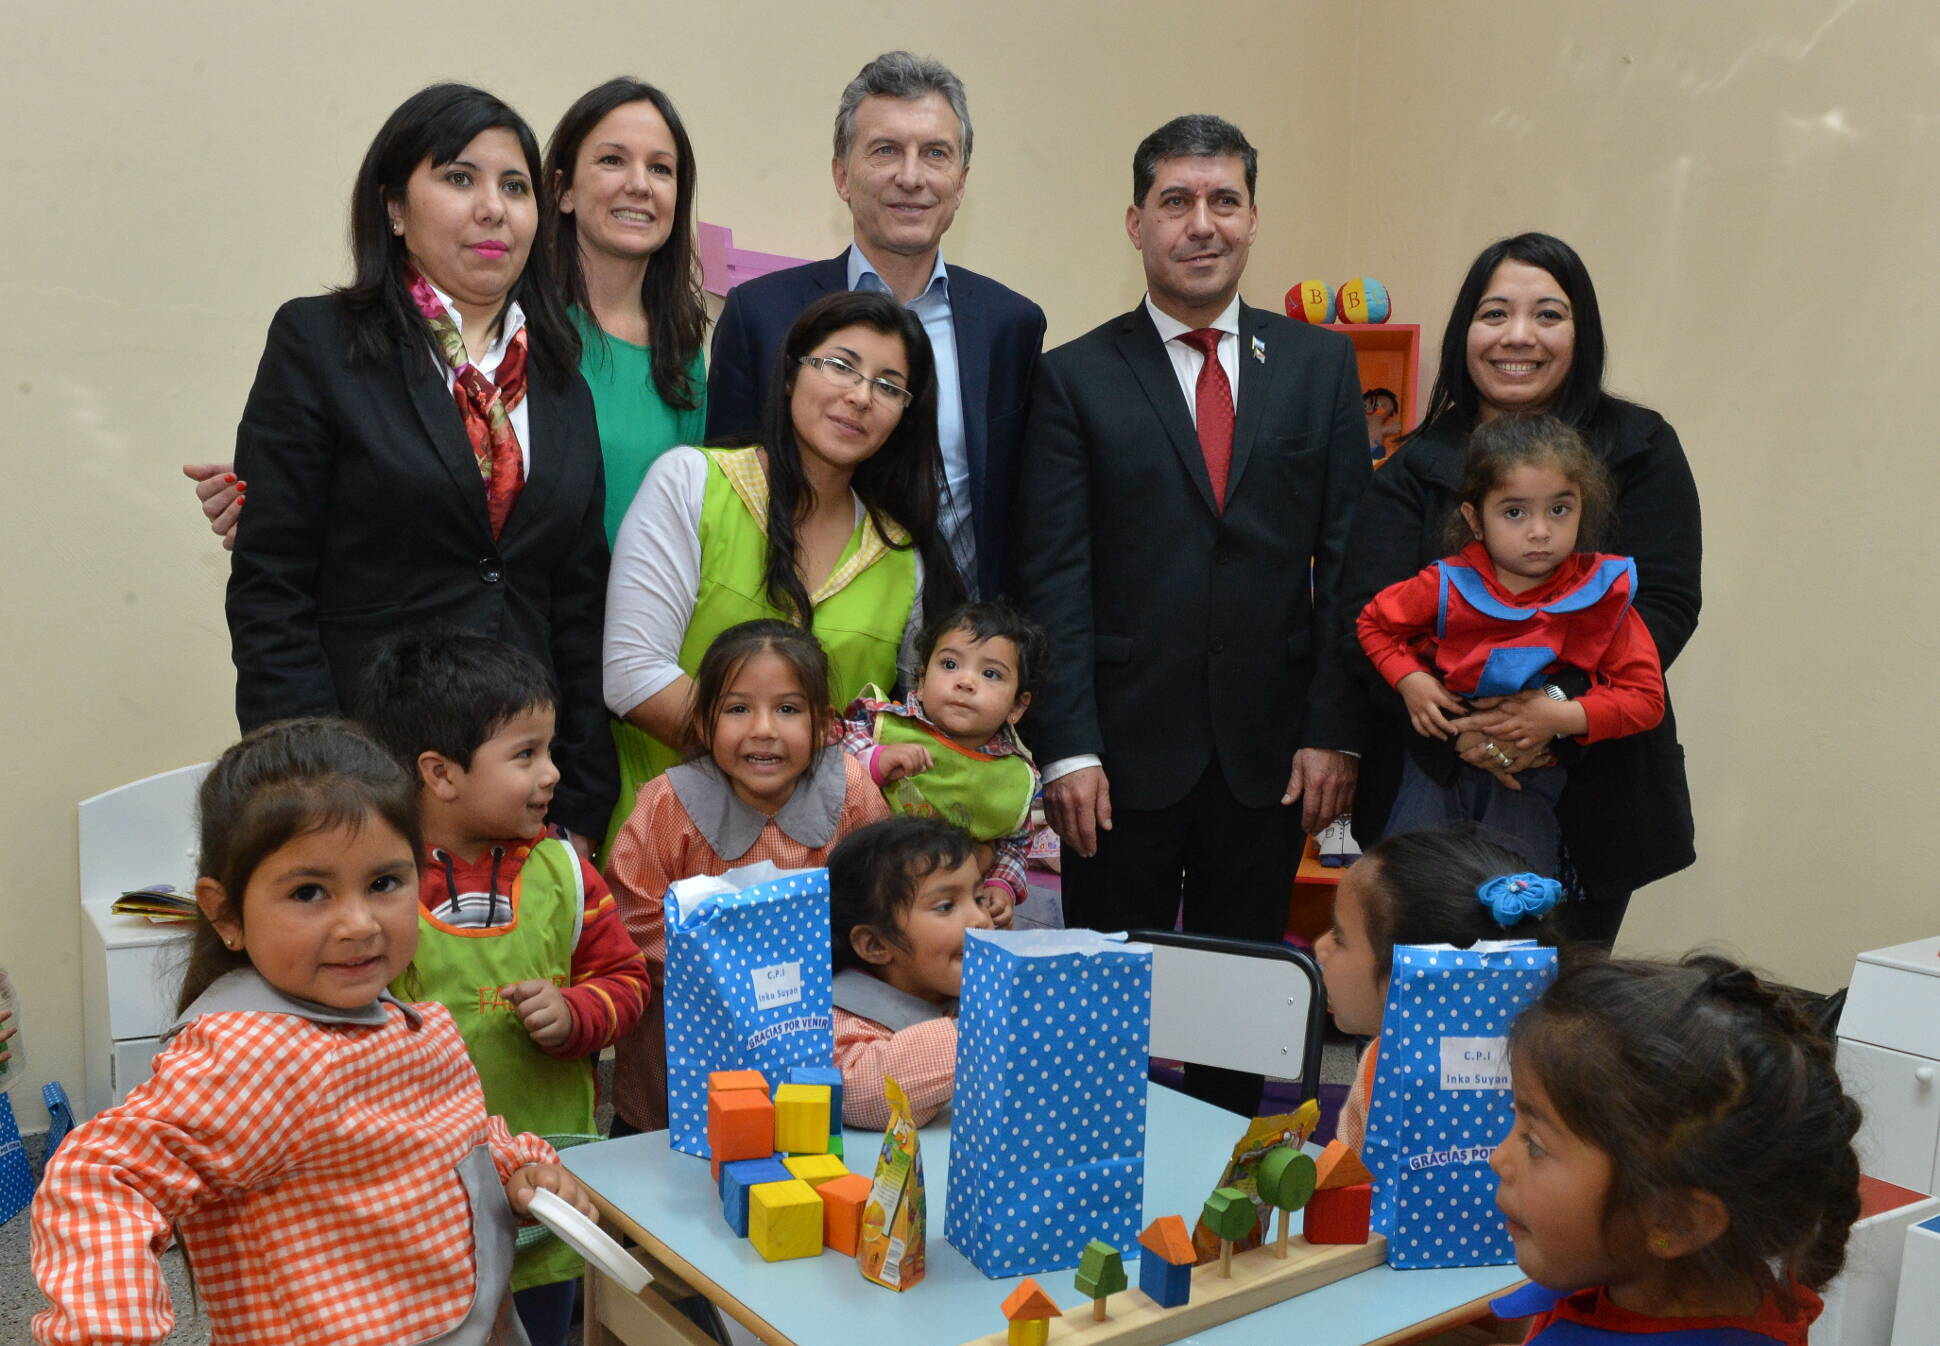 El Presidente inauguró un Espacio de Primera Infancia en La Rioja y ya suman más de 500 en todo el país